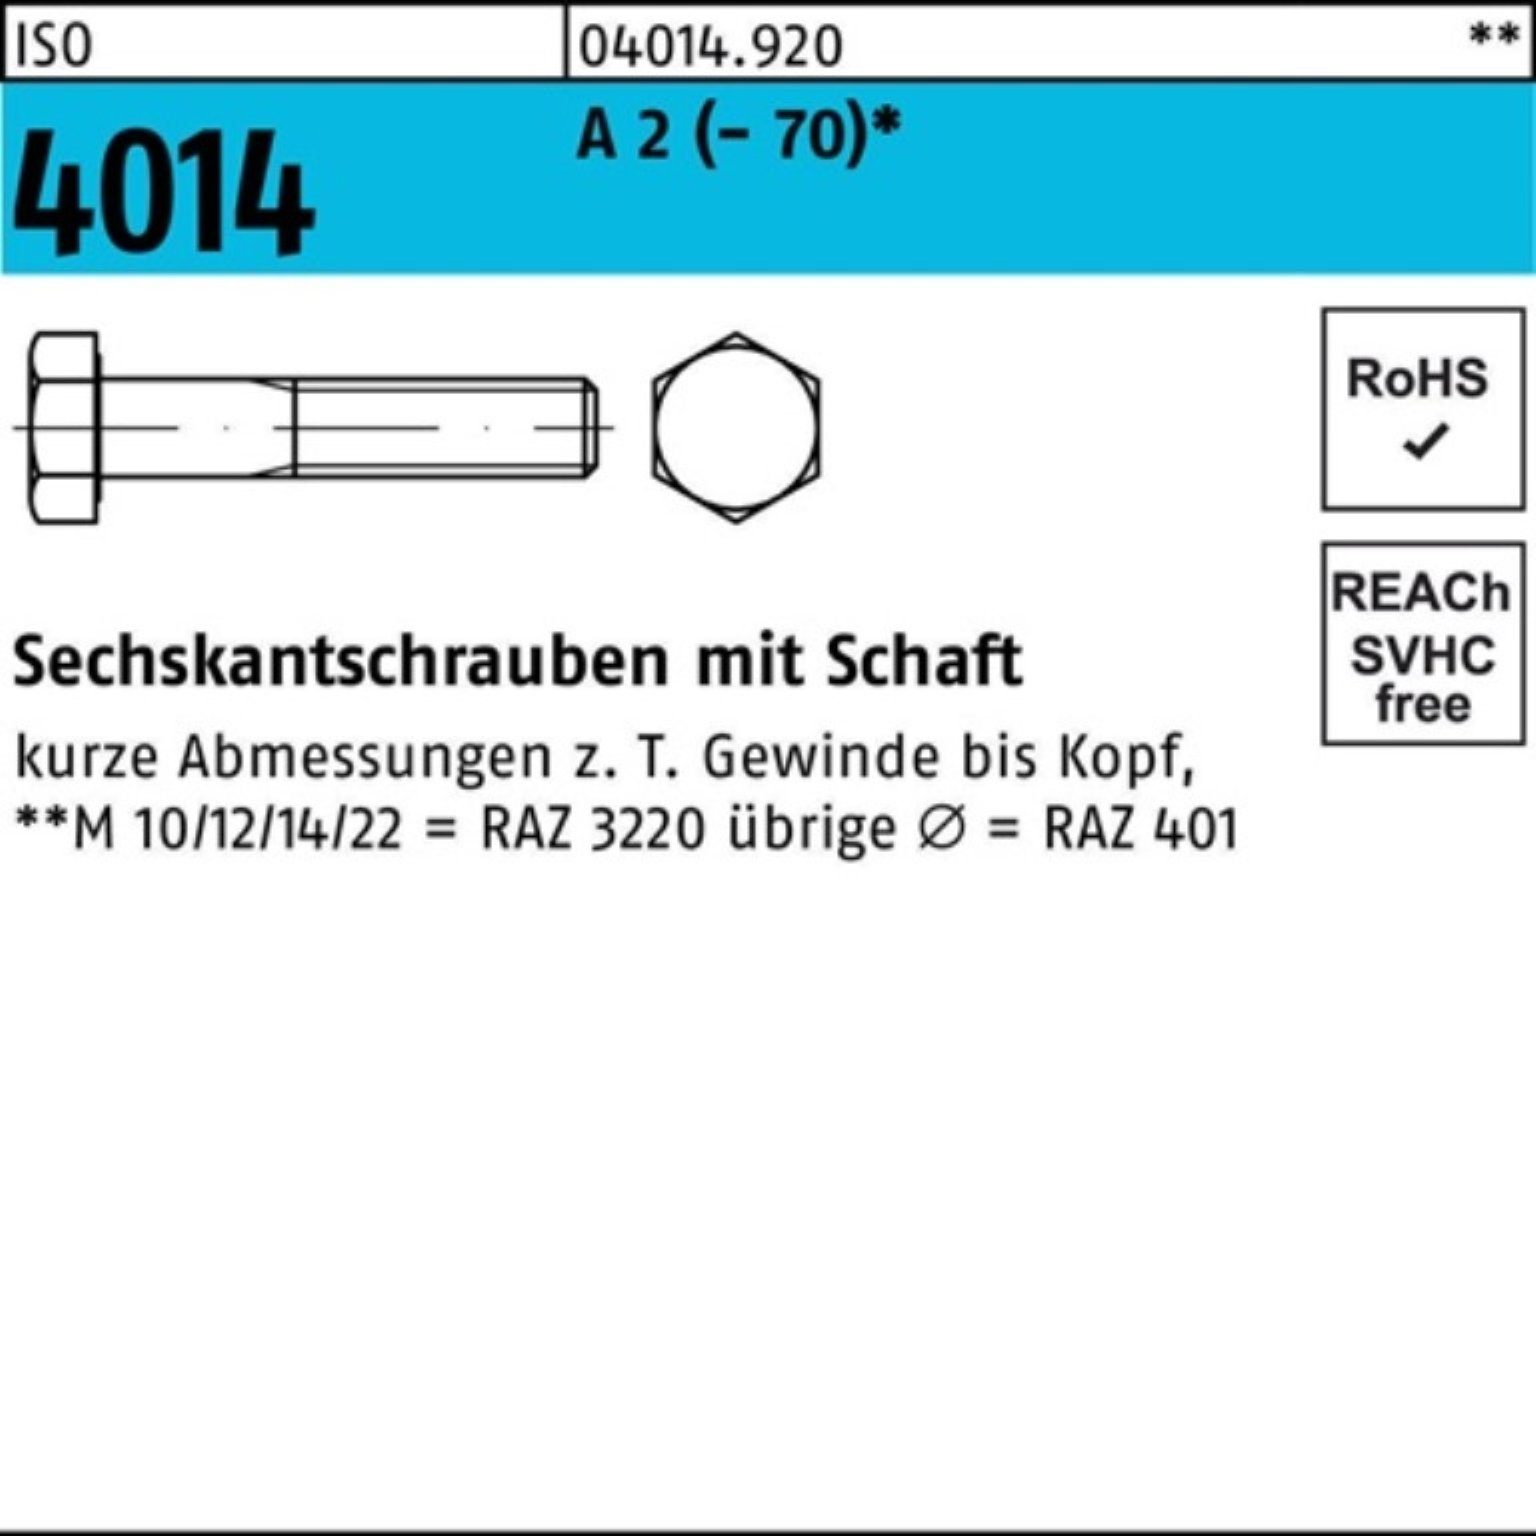 Bufab Sechskantschraube 100er Pack Sechskantschraube ISO 4014 Schaft M16x 55 A 2 (70) 50 St